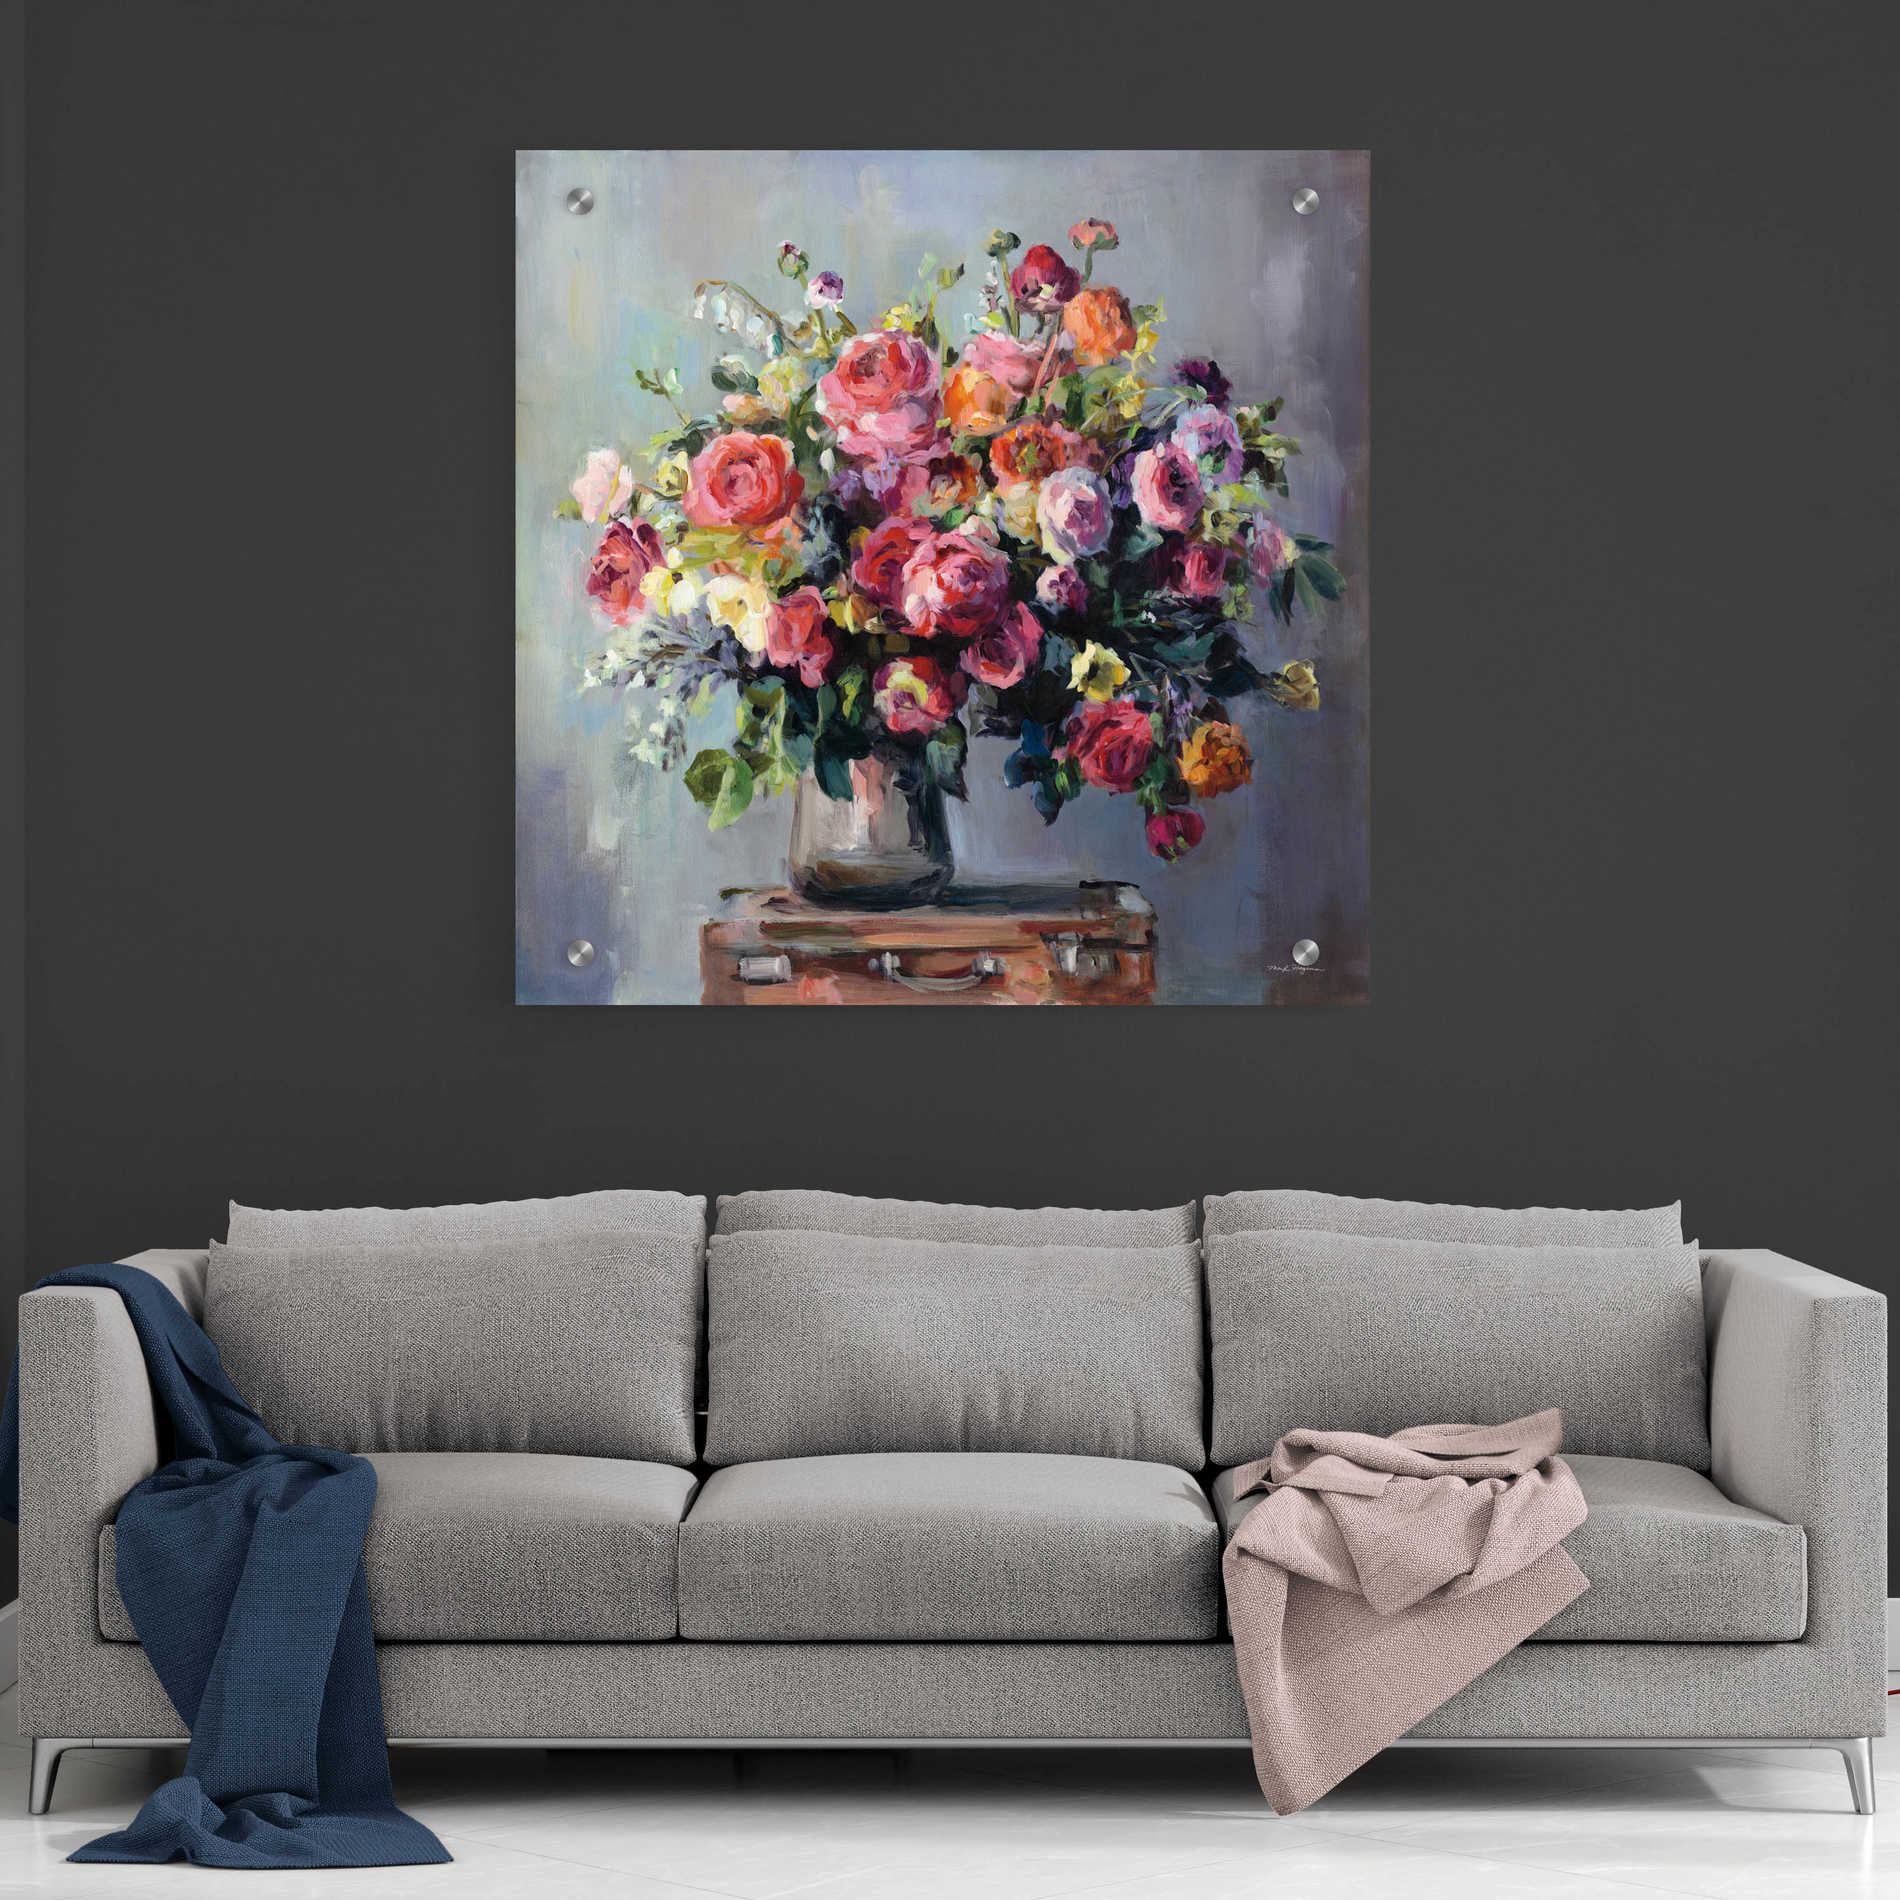 Epic Art 'Abundant Bouquet' by Marilyn Hageman, Acrylic Glass Wall Art,36x36